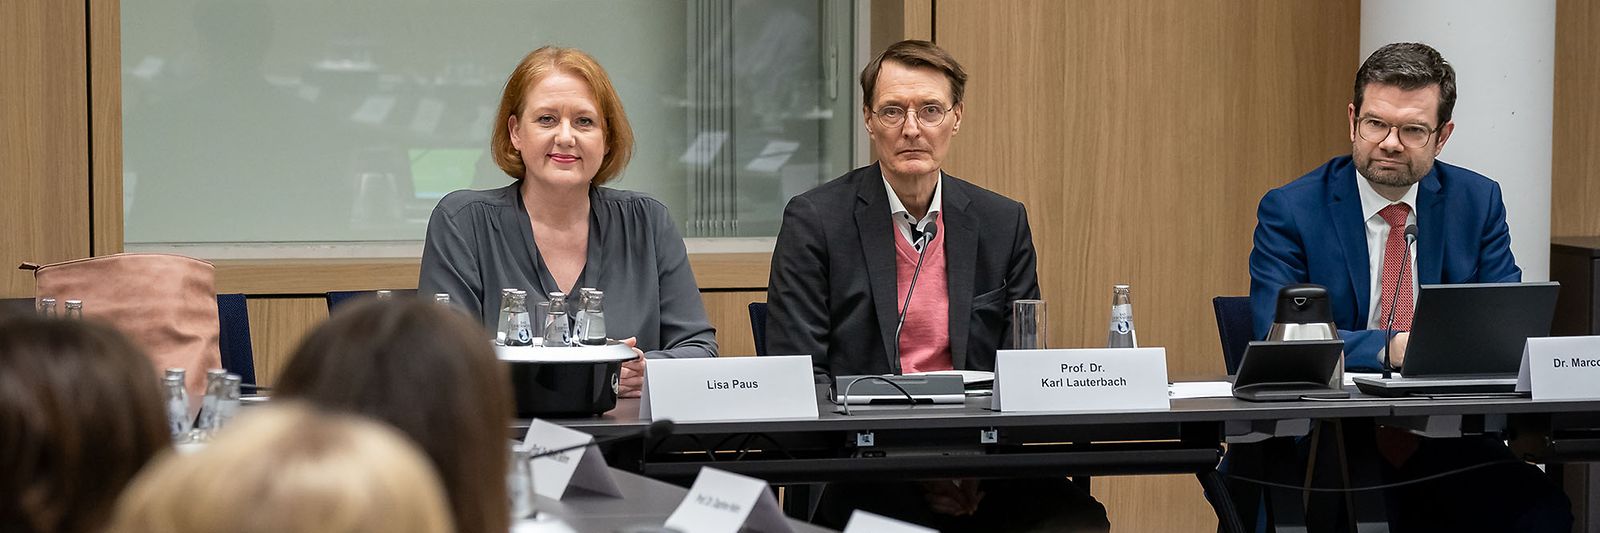 Lisa Paus, Prof. Dr. Karl Lauterbach und Dr. Marco Buschmann